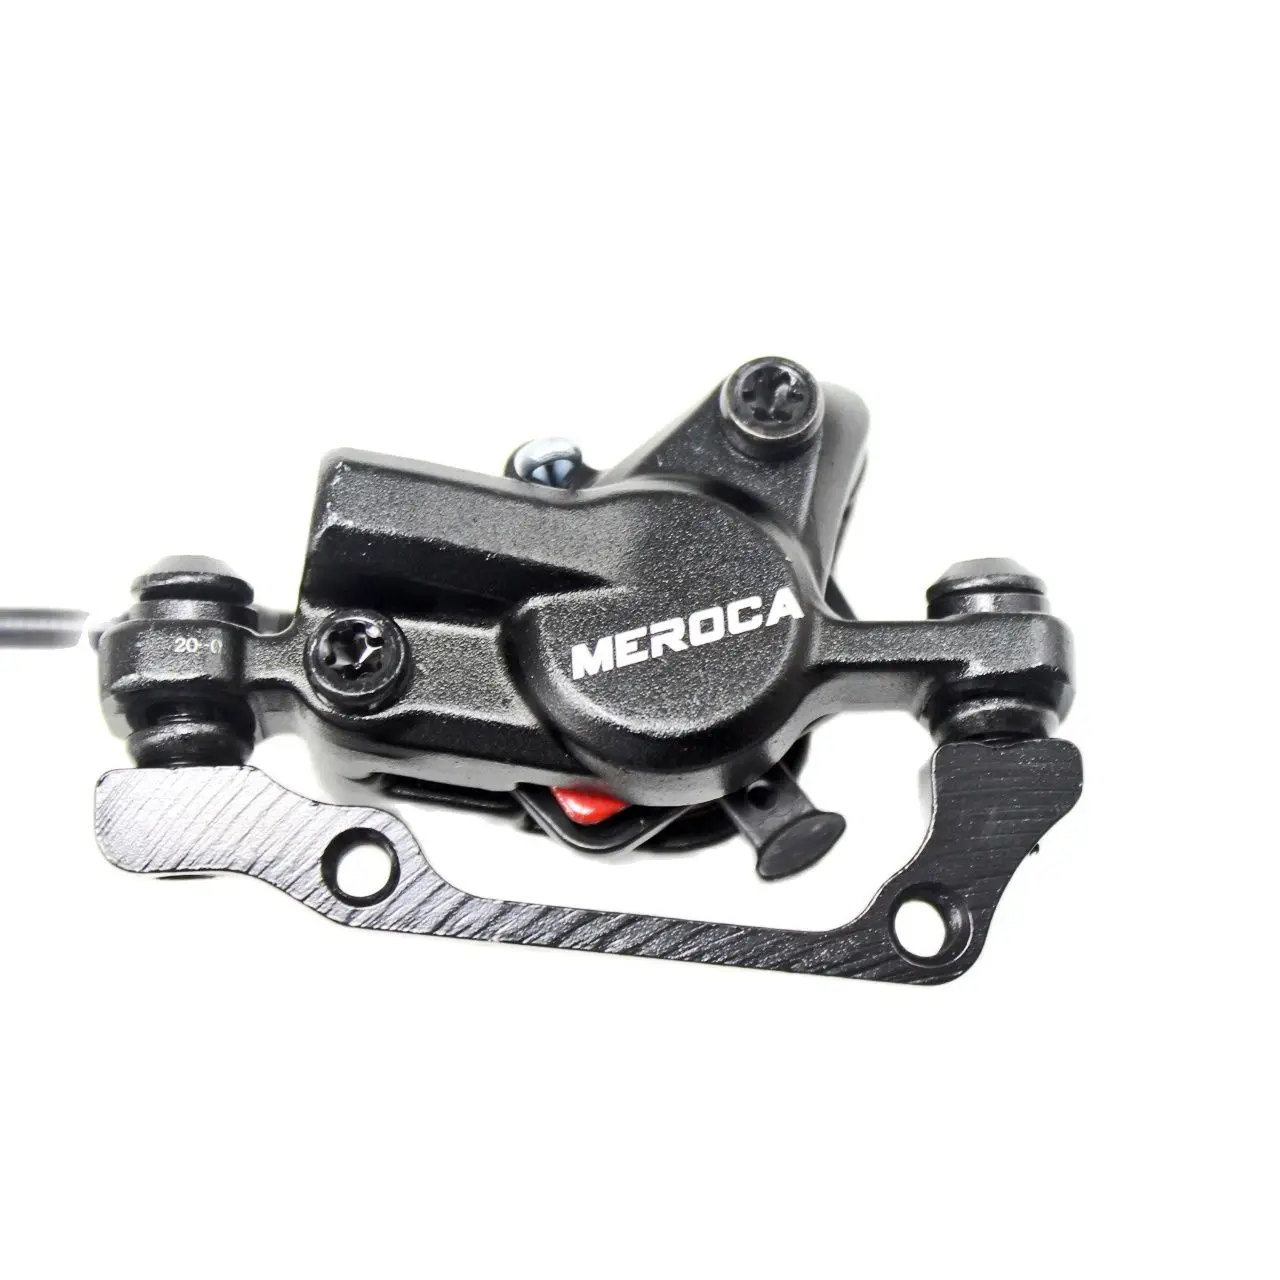 Гидравлический дисковый тормоз MEROCA M800 MTB Запчасти для тормоза для горных велосипедов PK MT200, популярные аксессуары